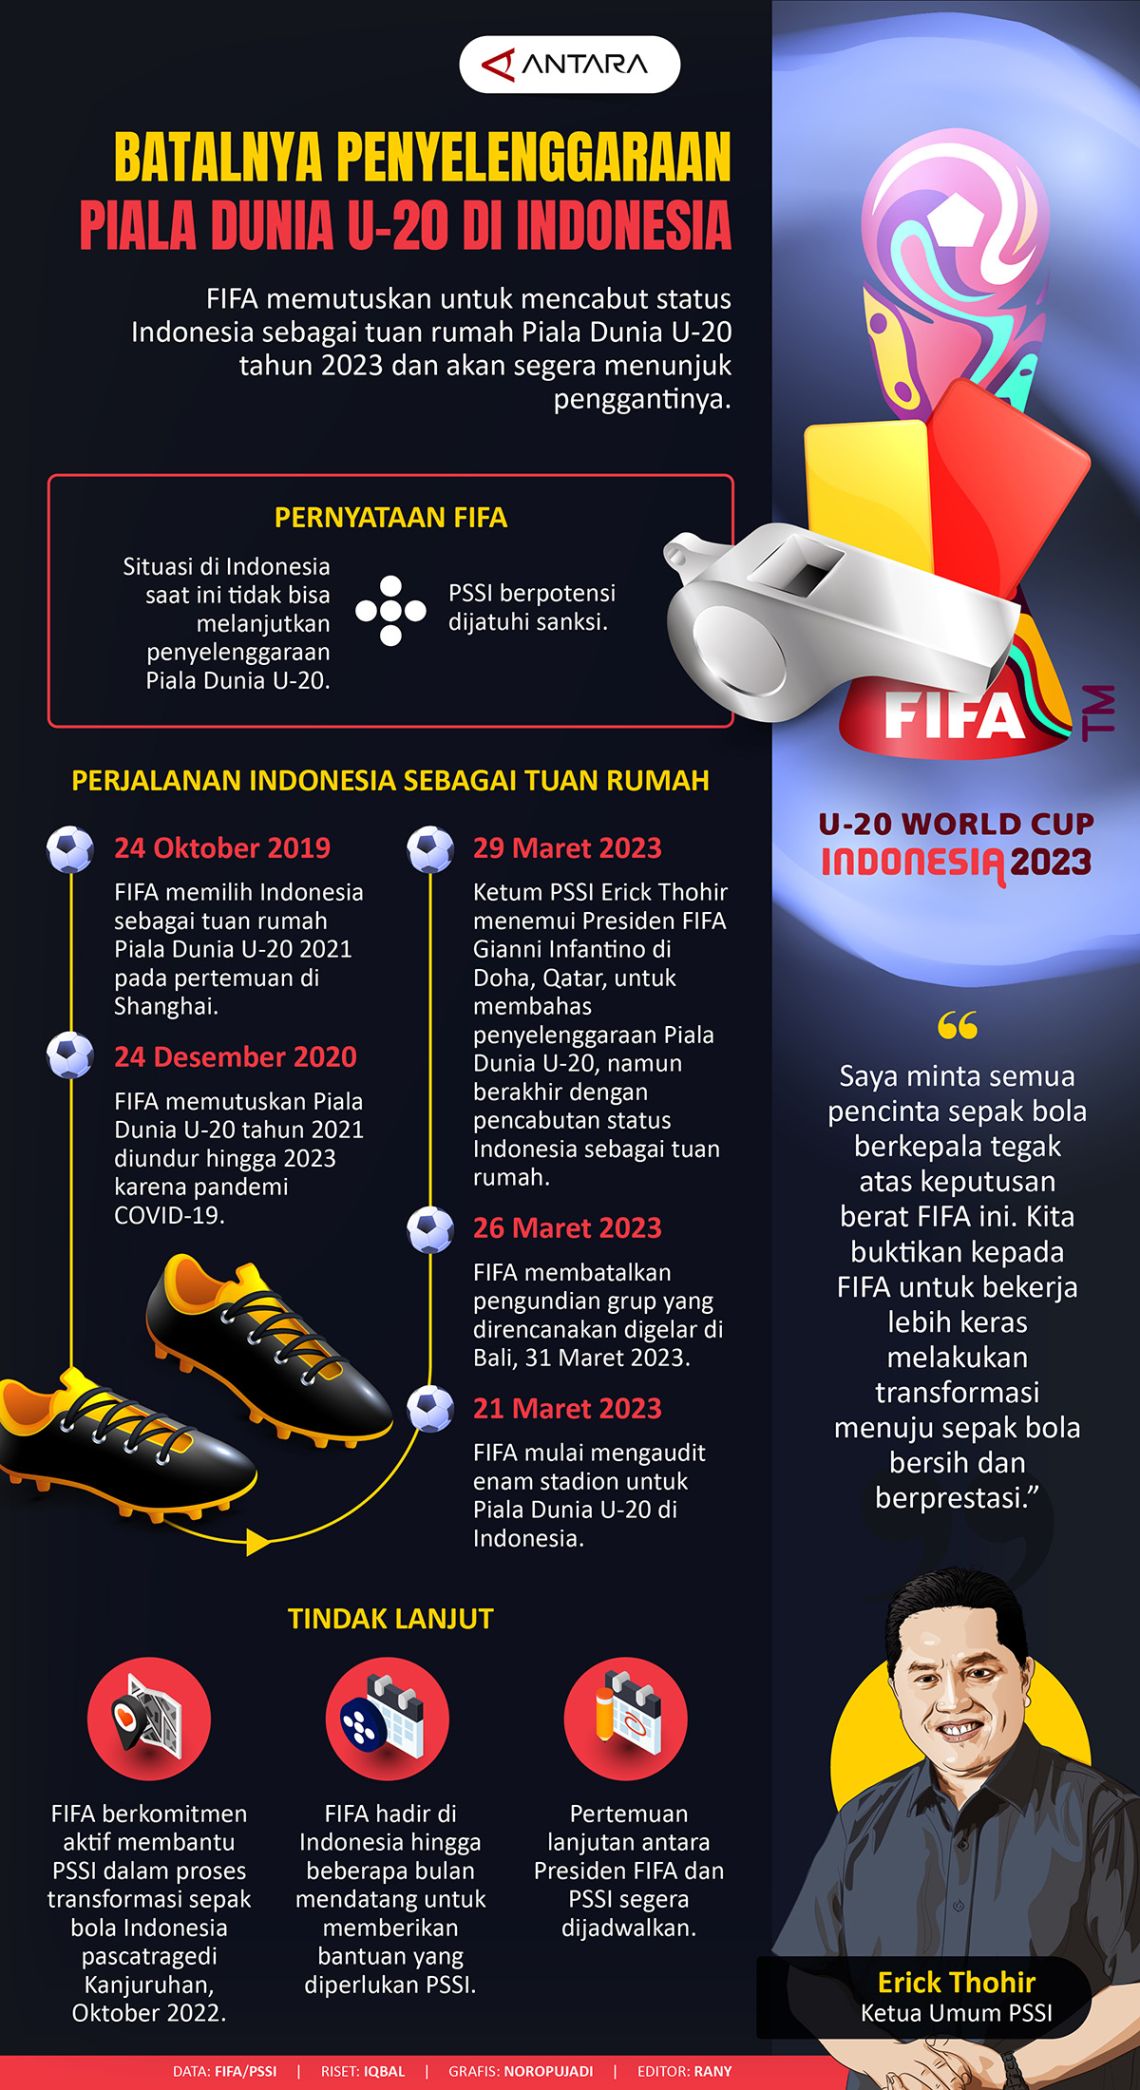 Batalnya penyelenggaraan Piala Dunia U-20 di Indonesia